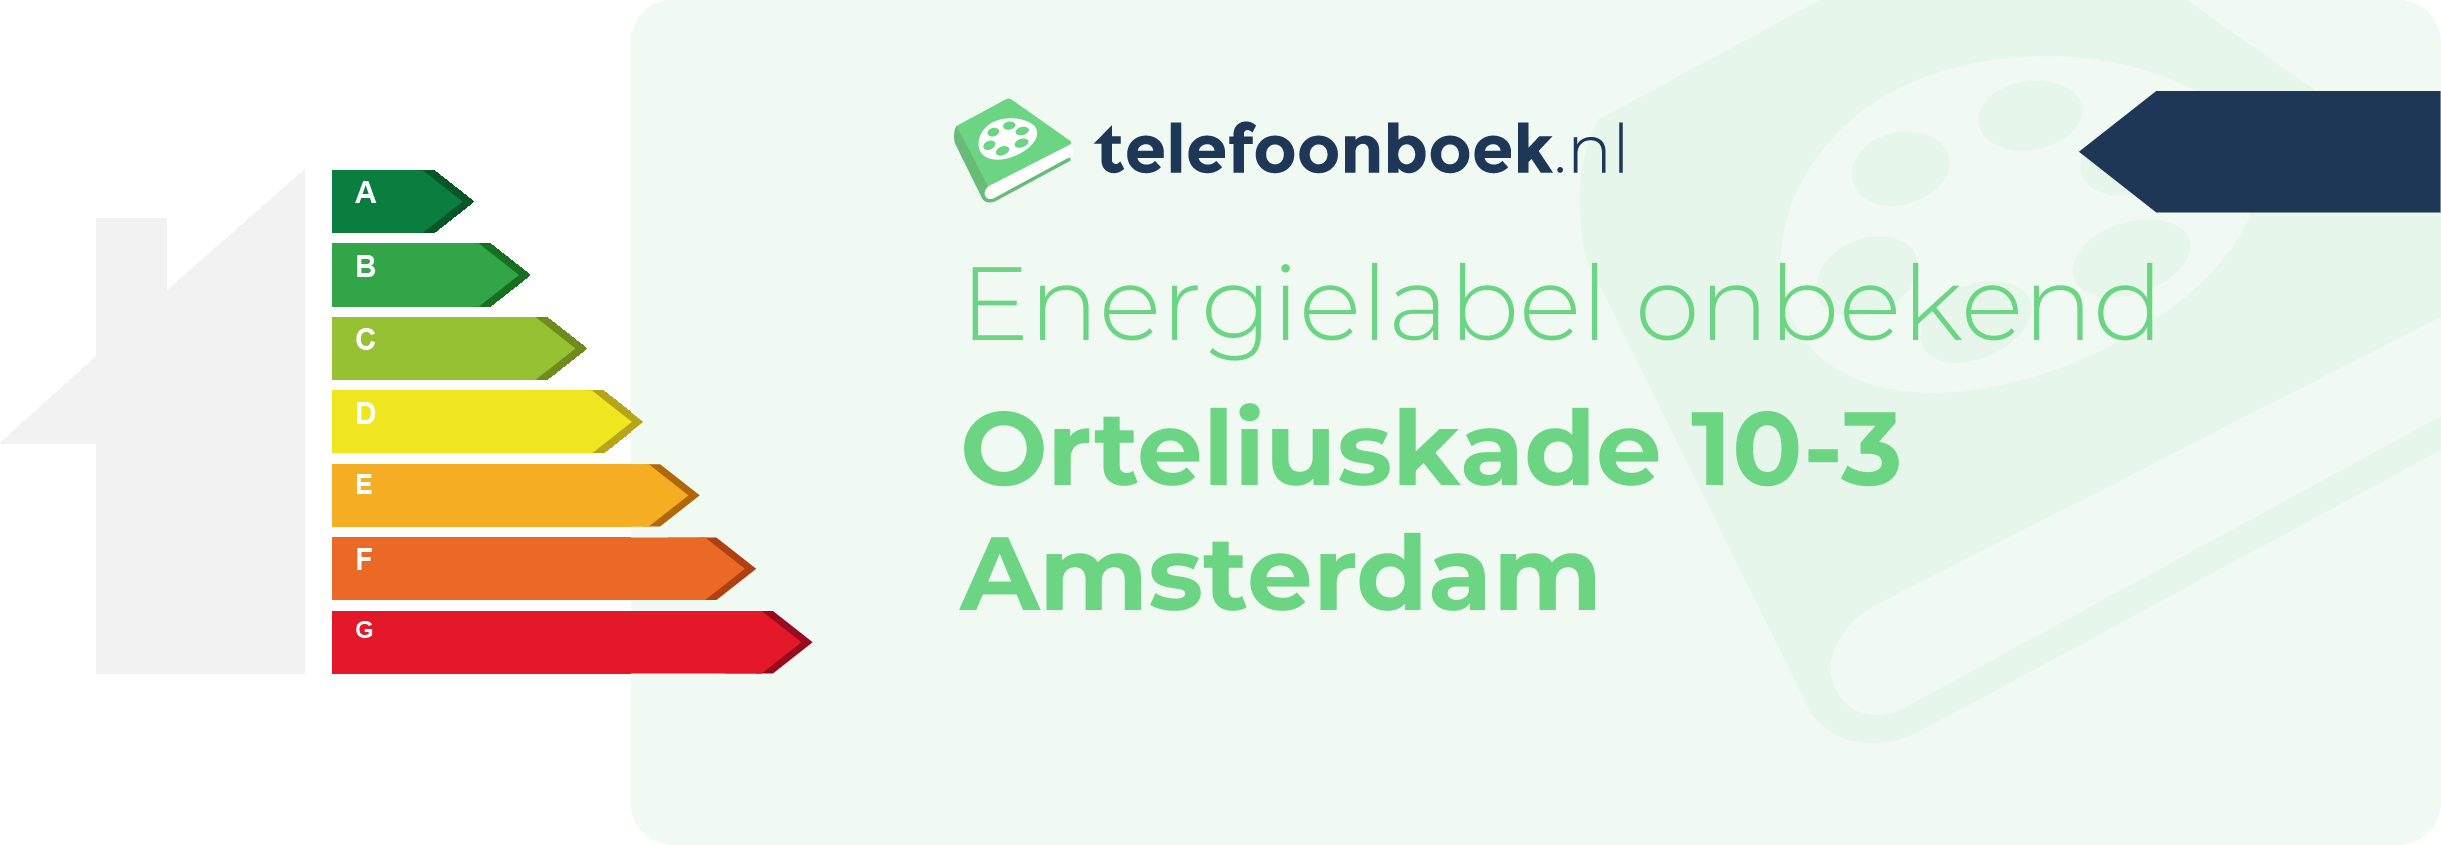 Energielabel Orteliuskade 10-3 Amsterdam